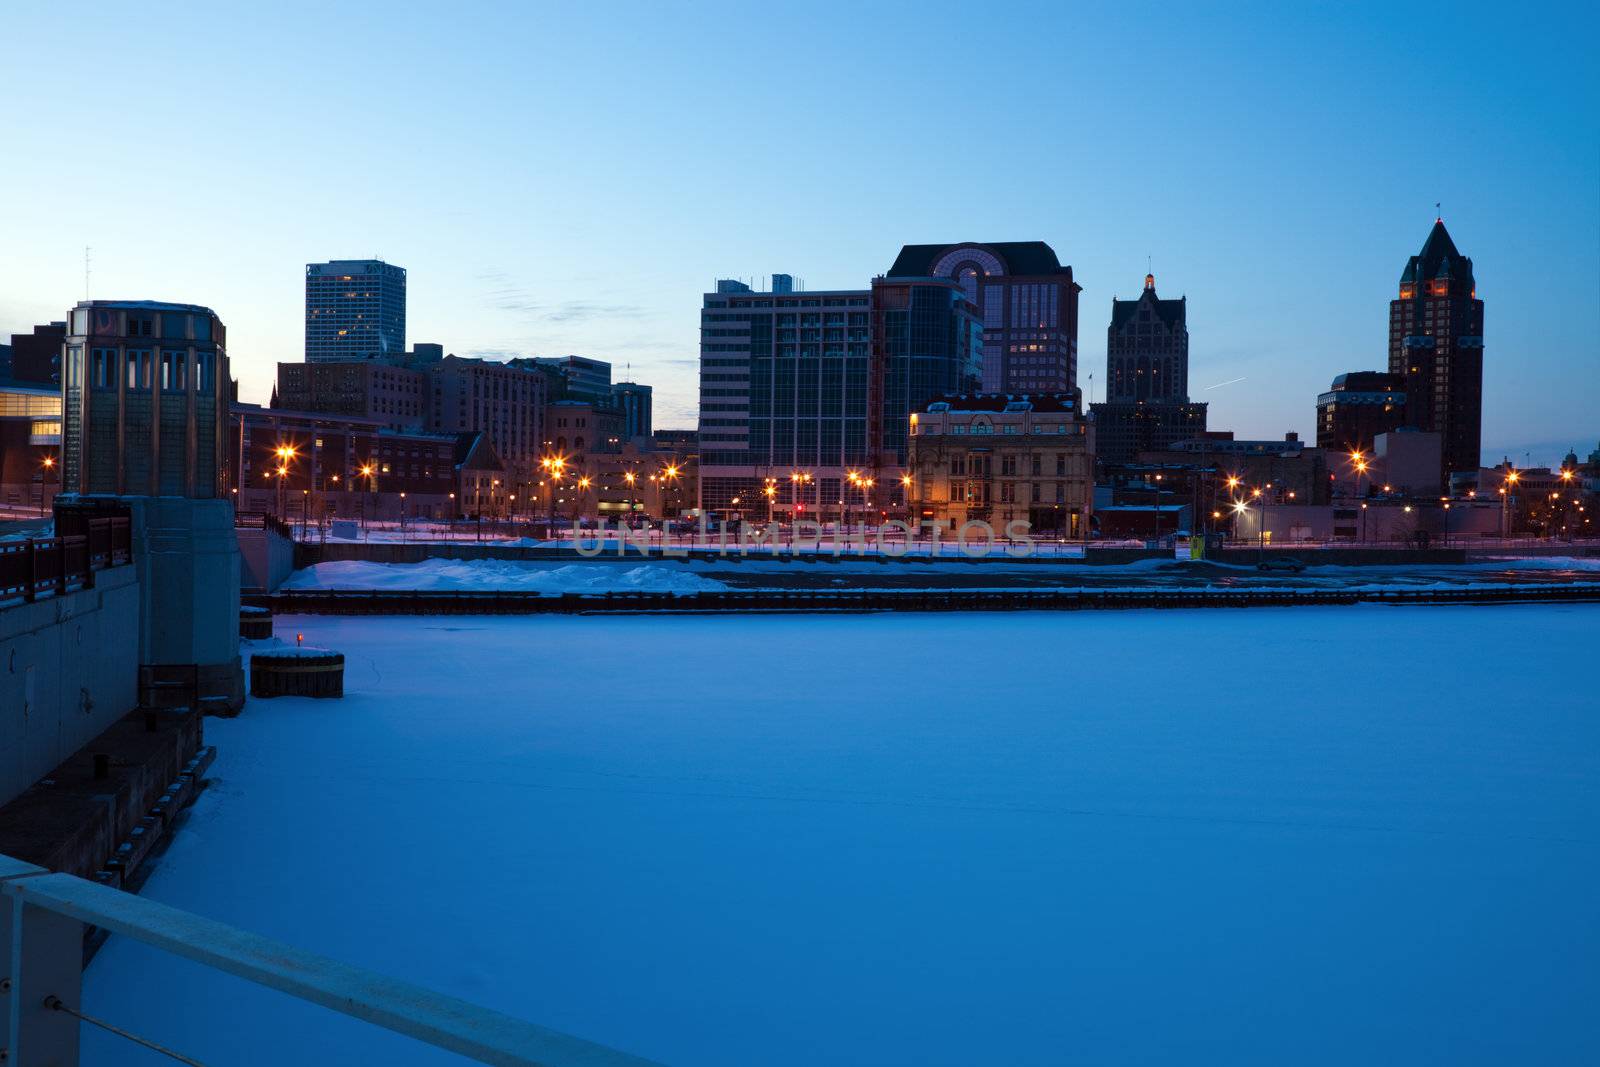 Panoramic Milwaukee by benkrut